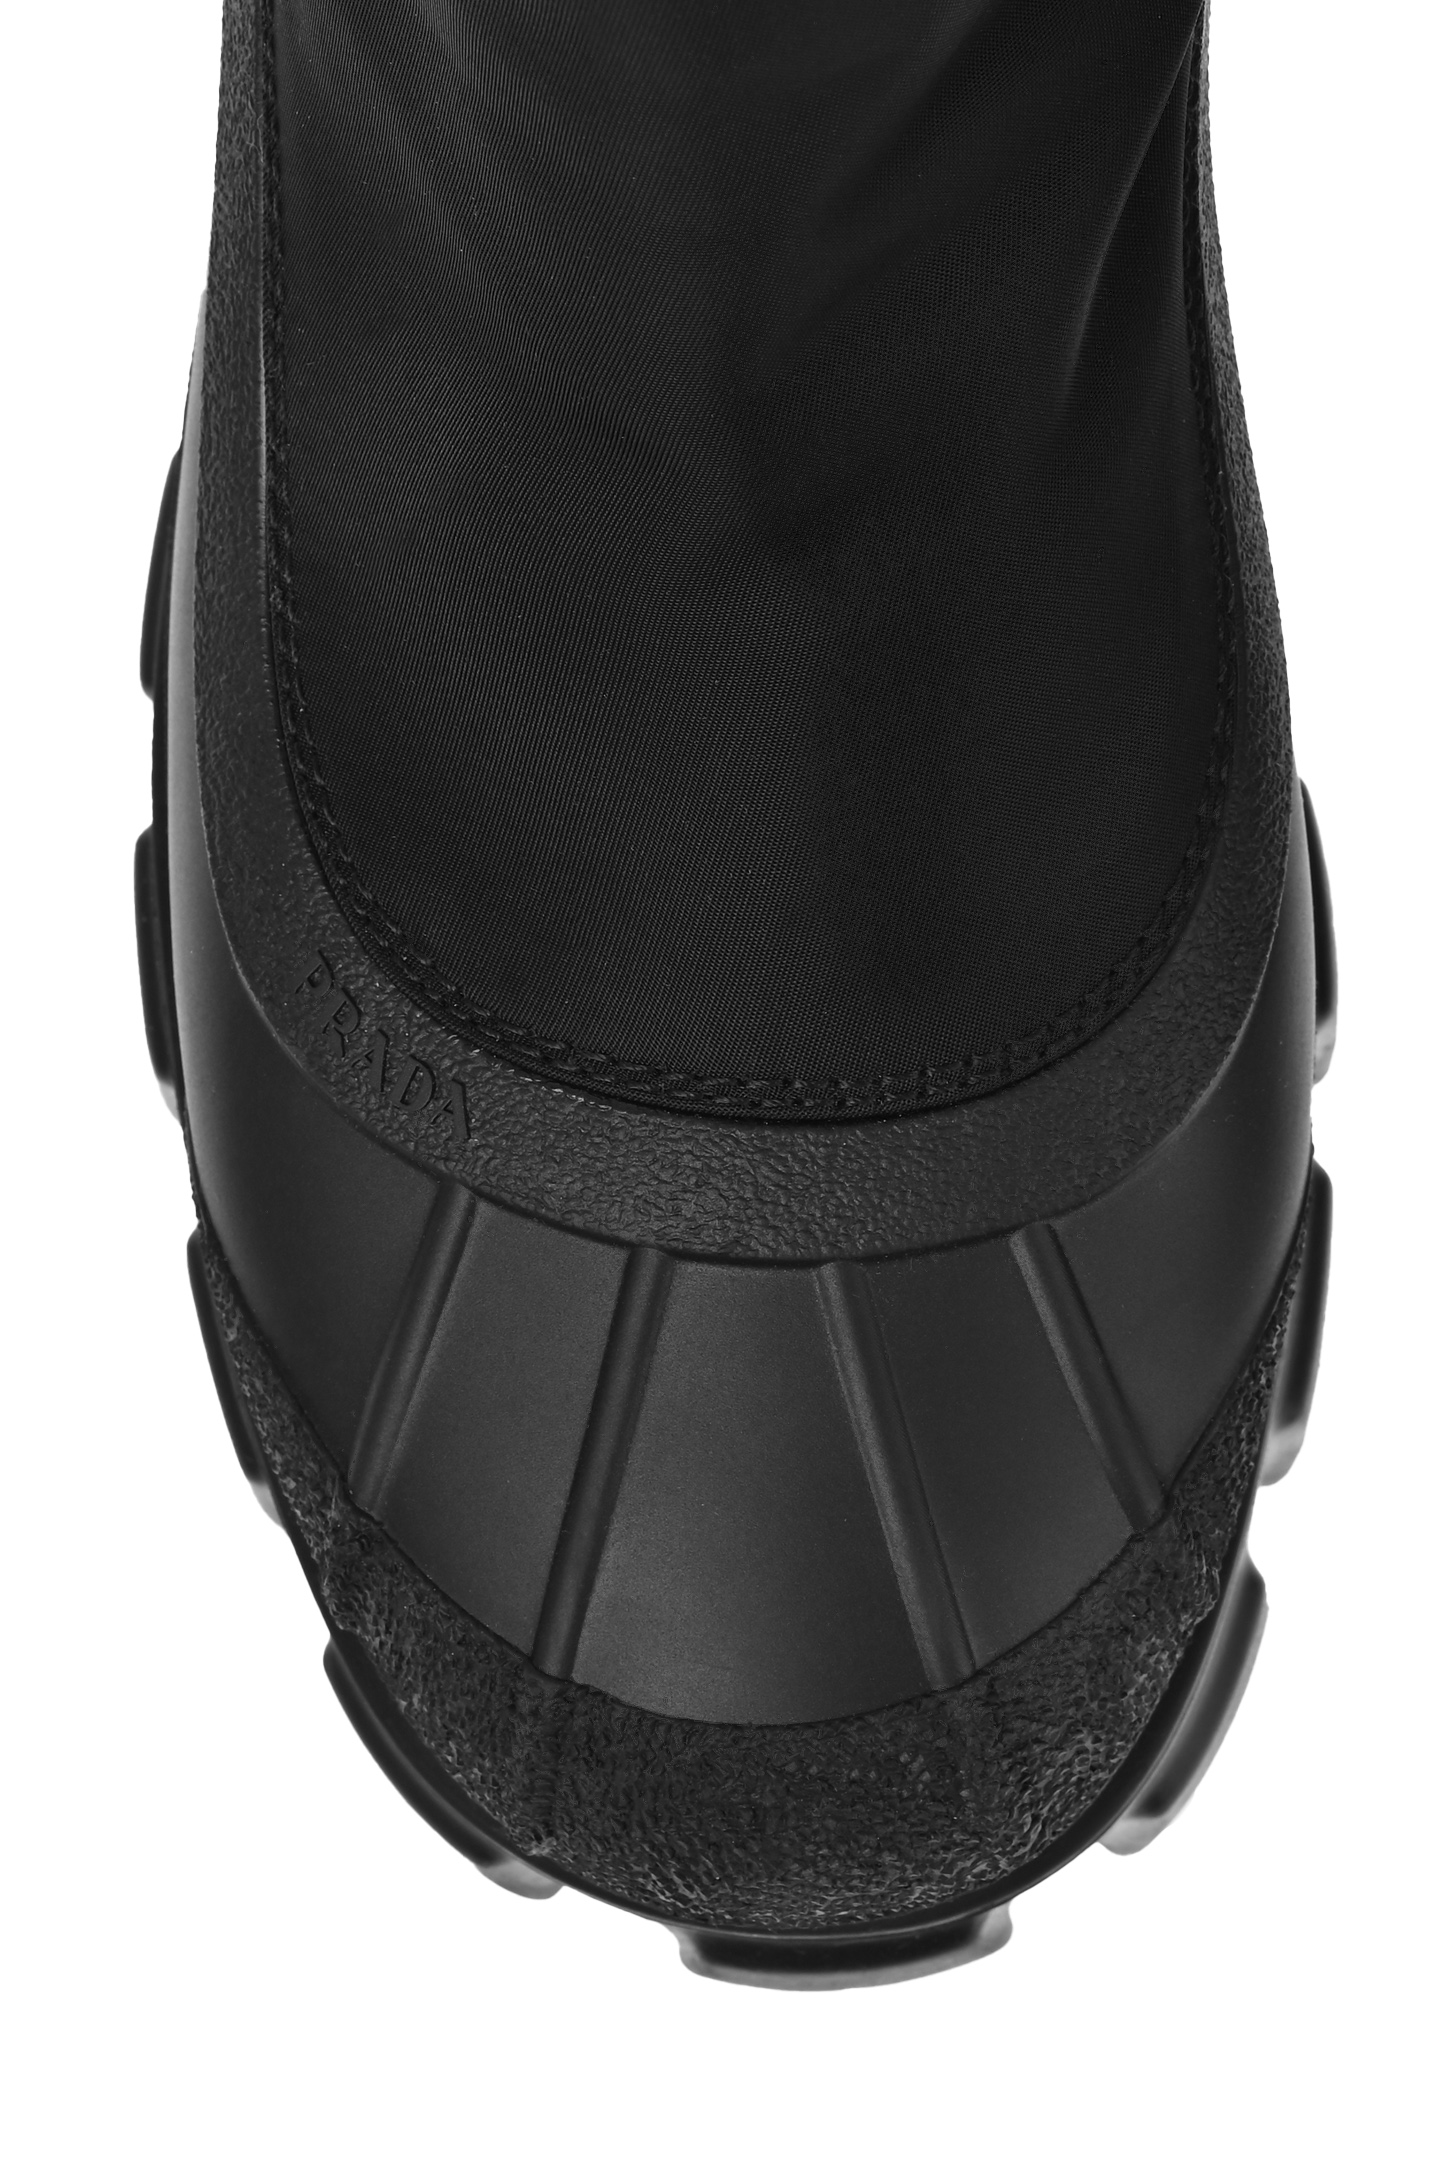 Ботинки PRADA 1T933M3LFVF0002, цвет: Черный, Женский